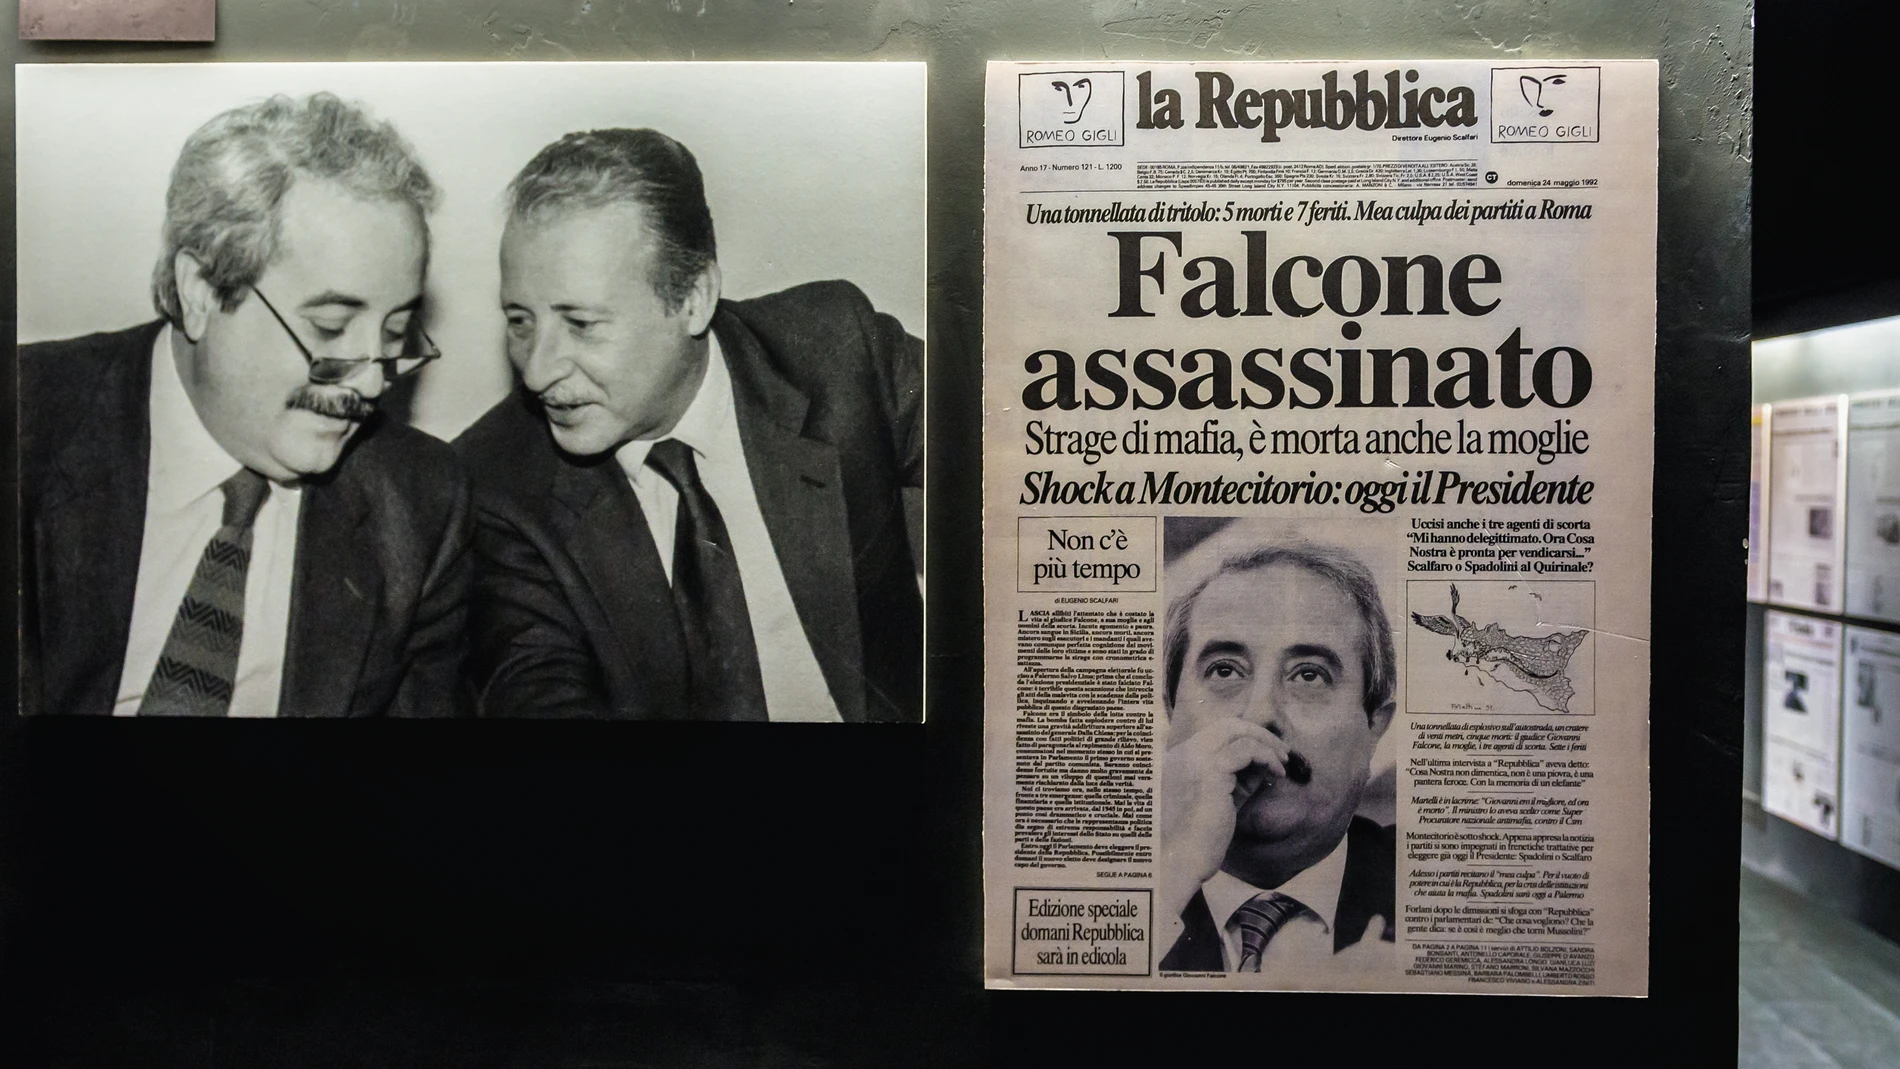 Fotografías de Giovanni Falcone y Paolo Borsellino en el Museo de la mafia en Sicilia. Al lado, la portada del asesinato de Falcone